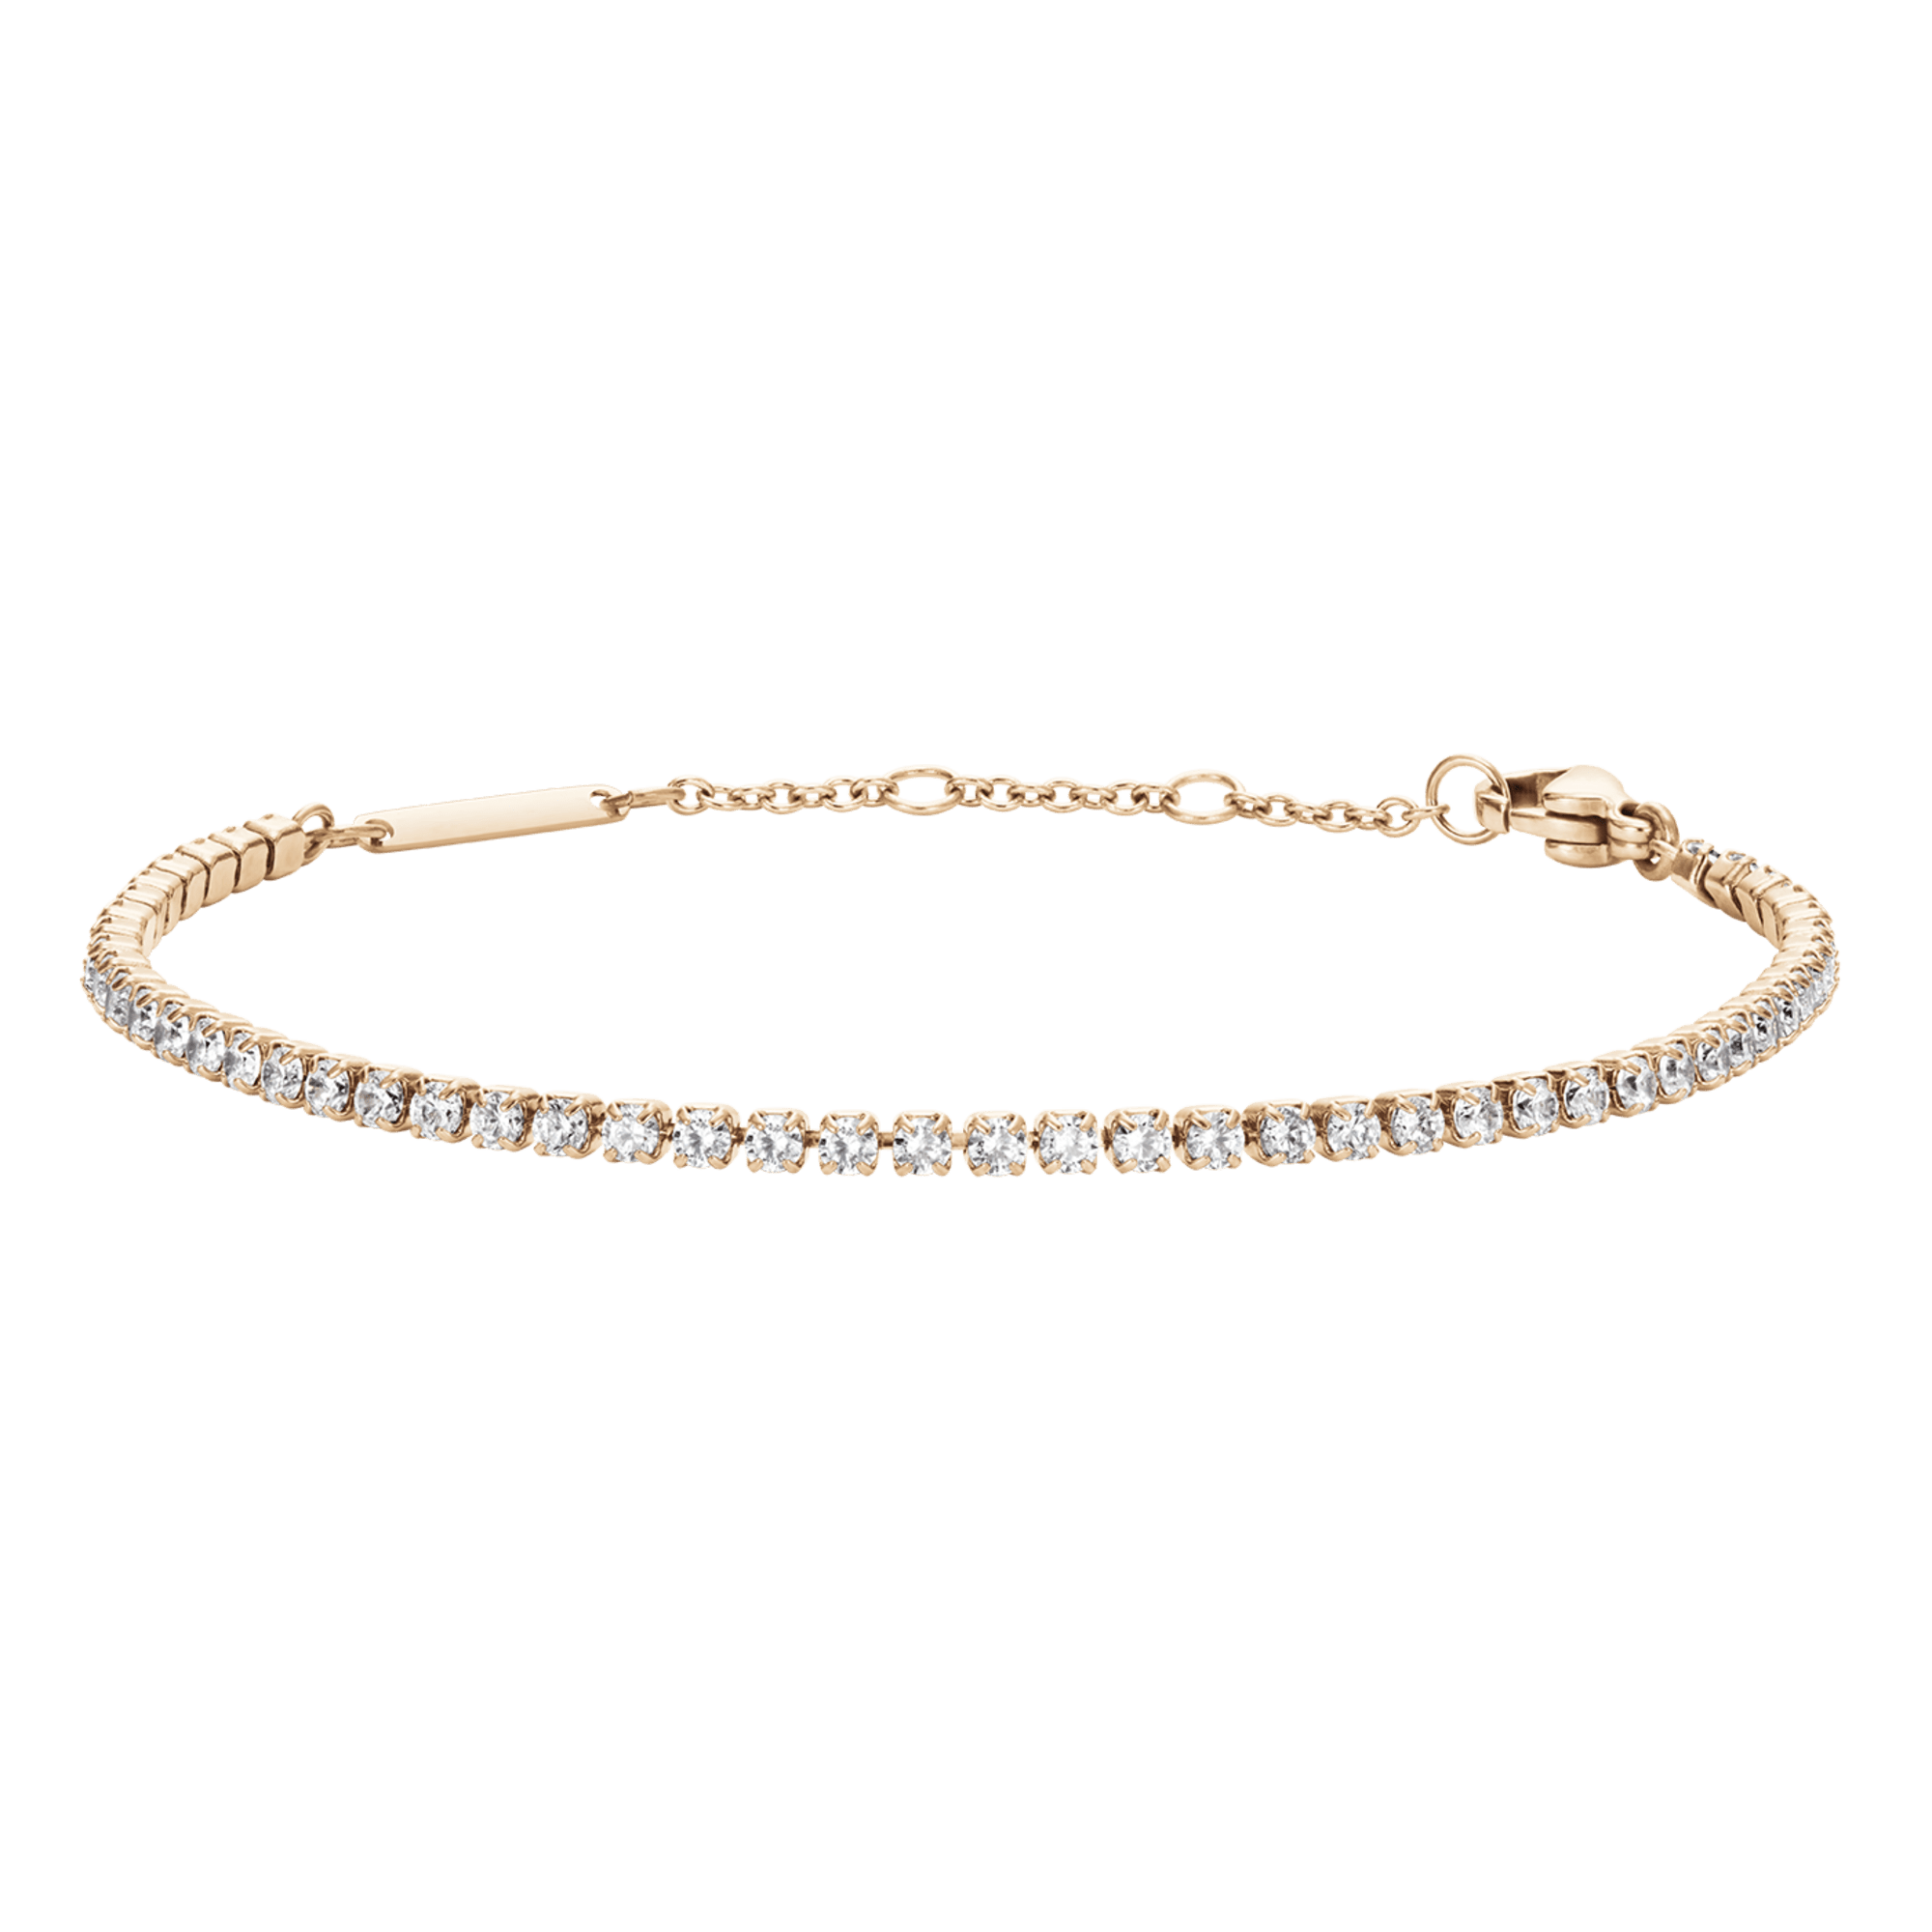 Stunning Diamond Tennis Bracelet